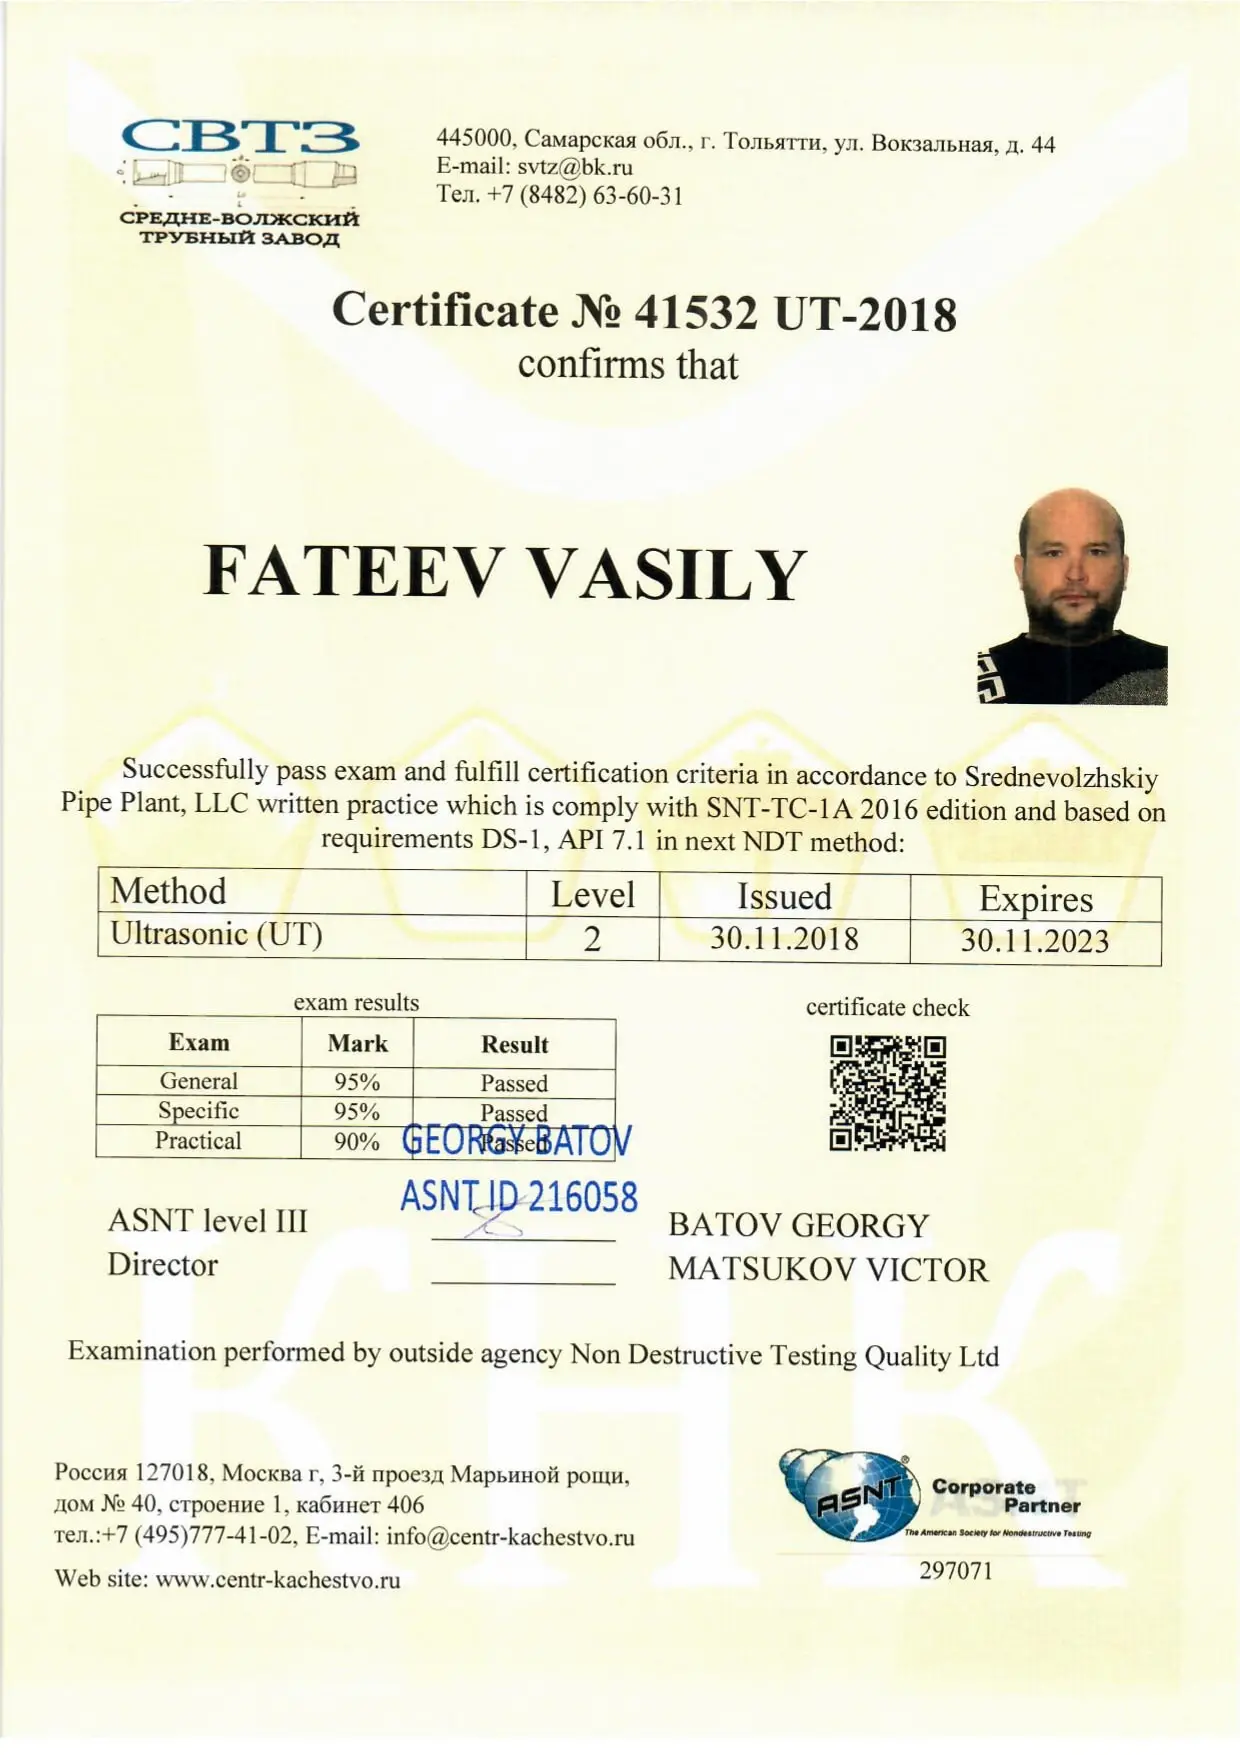 Фатеев сертификат 5